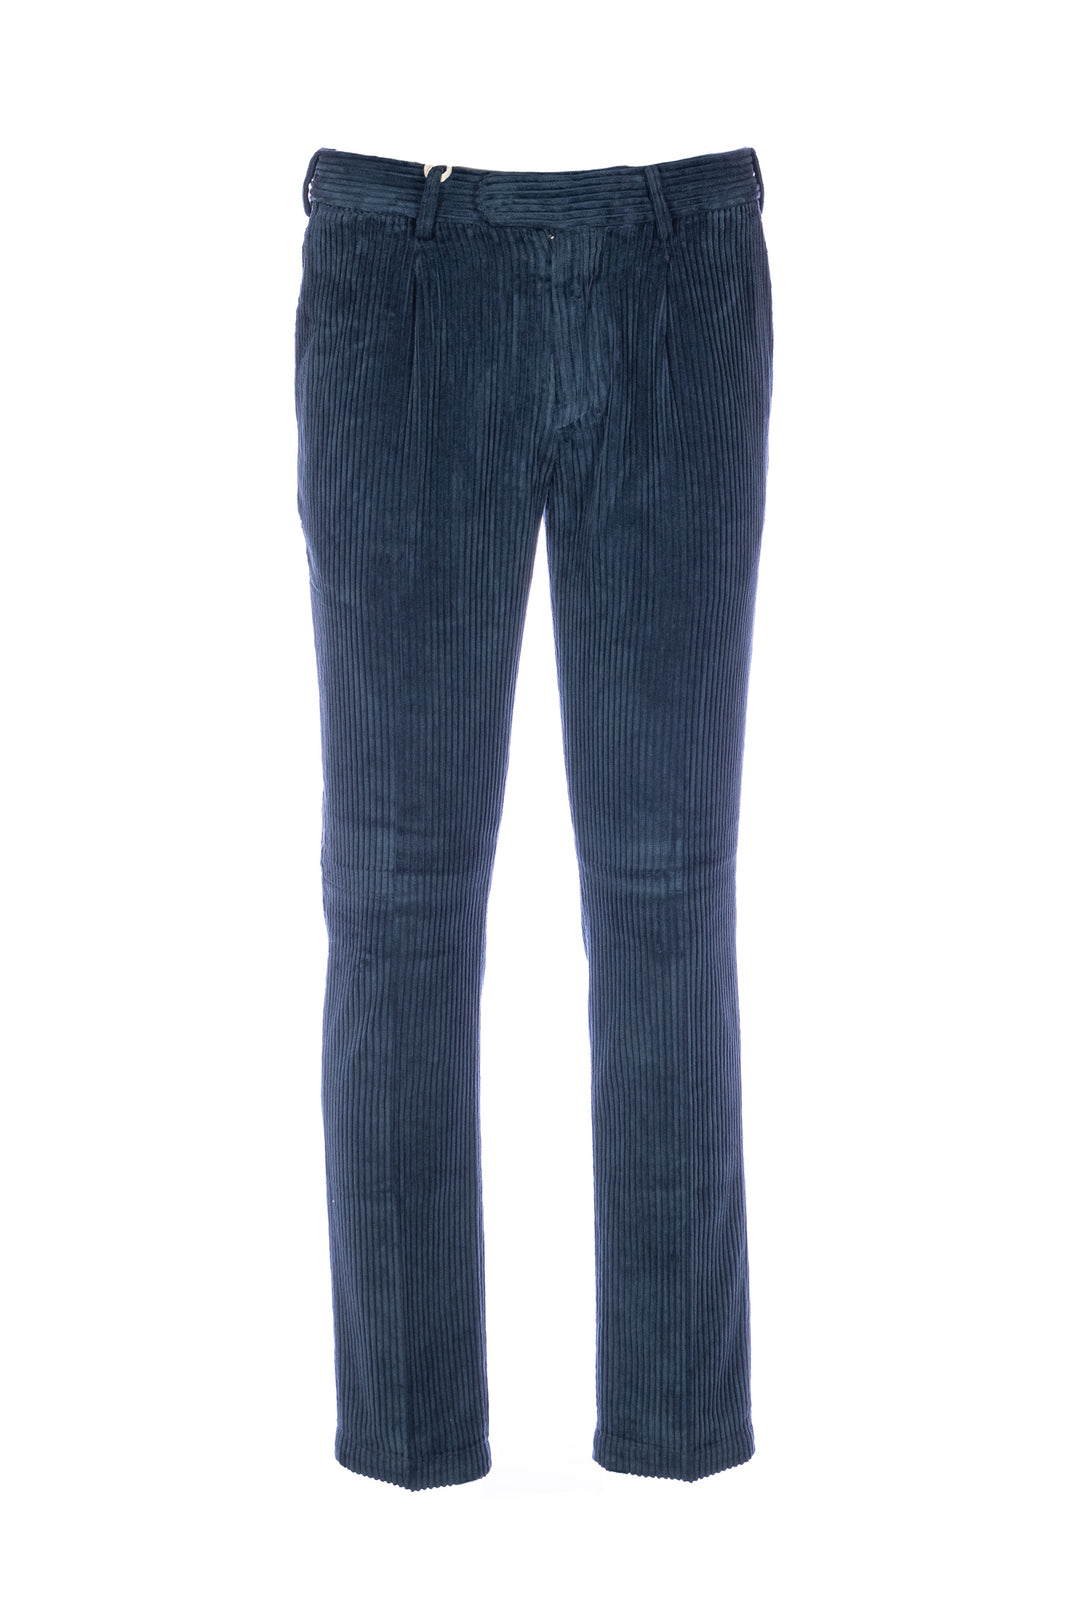 DEVORE Pantalone blu in velluto rocciatore con vita elastica - Mancinelli 1954